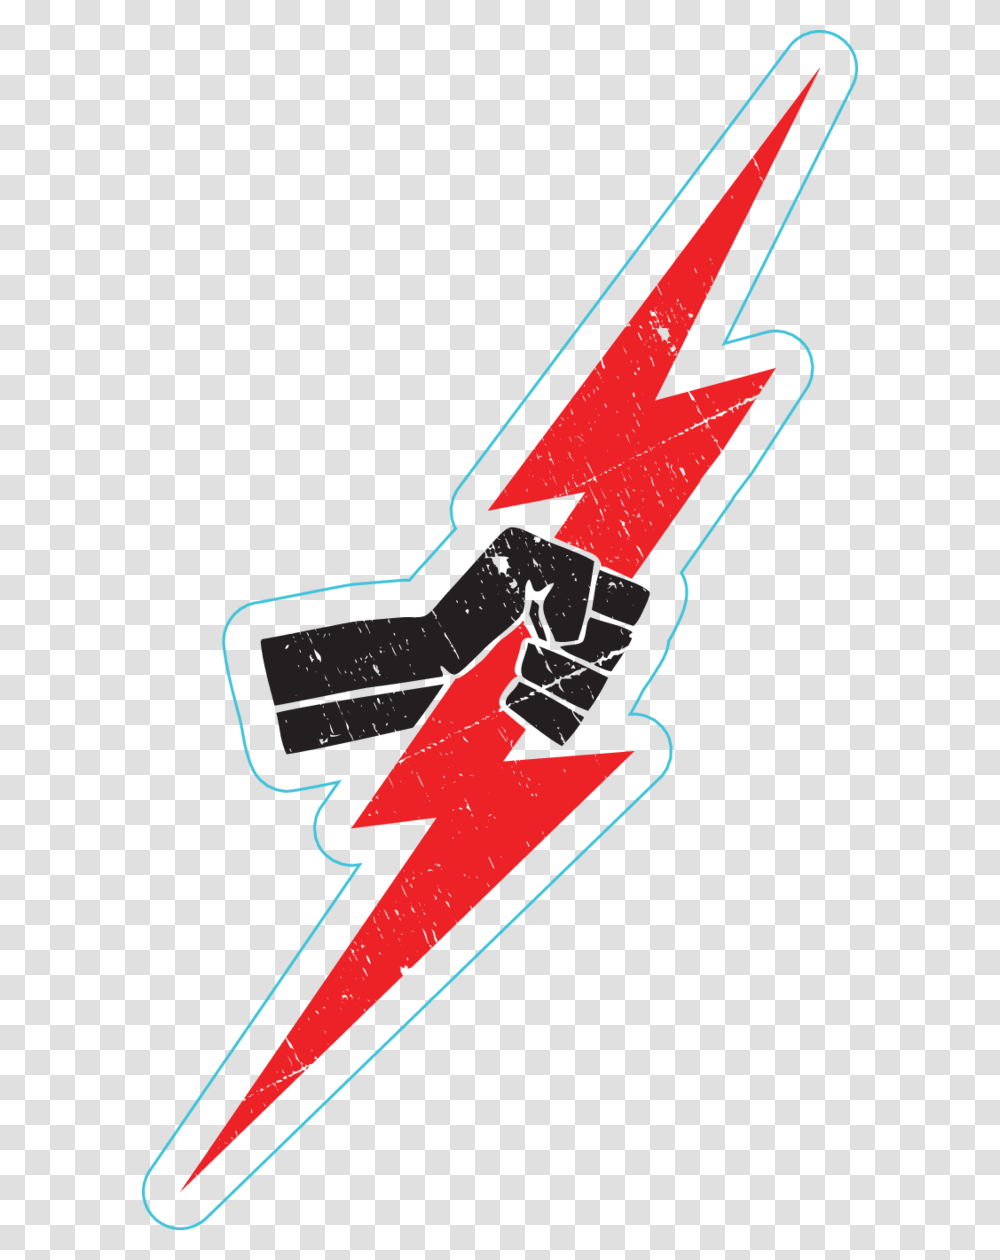 Red Lightning Bolt Lightning Bolt Z, Label Transparent Png